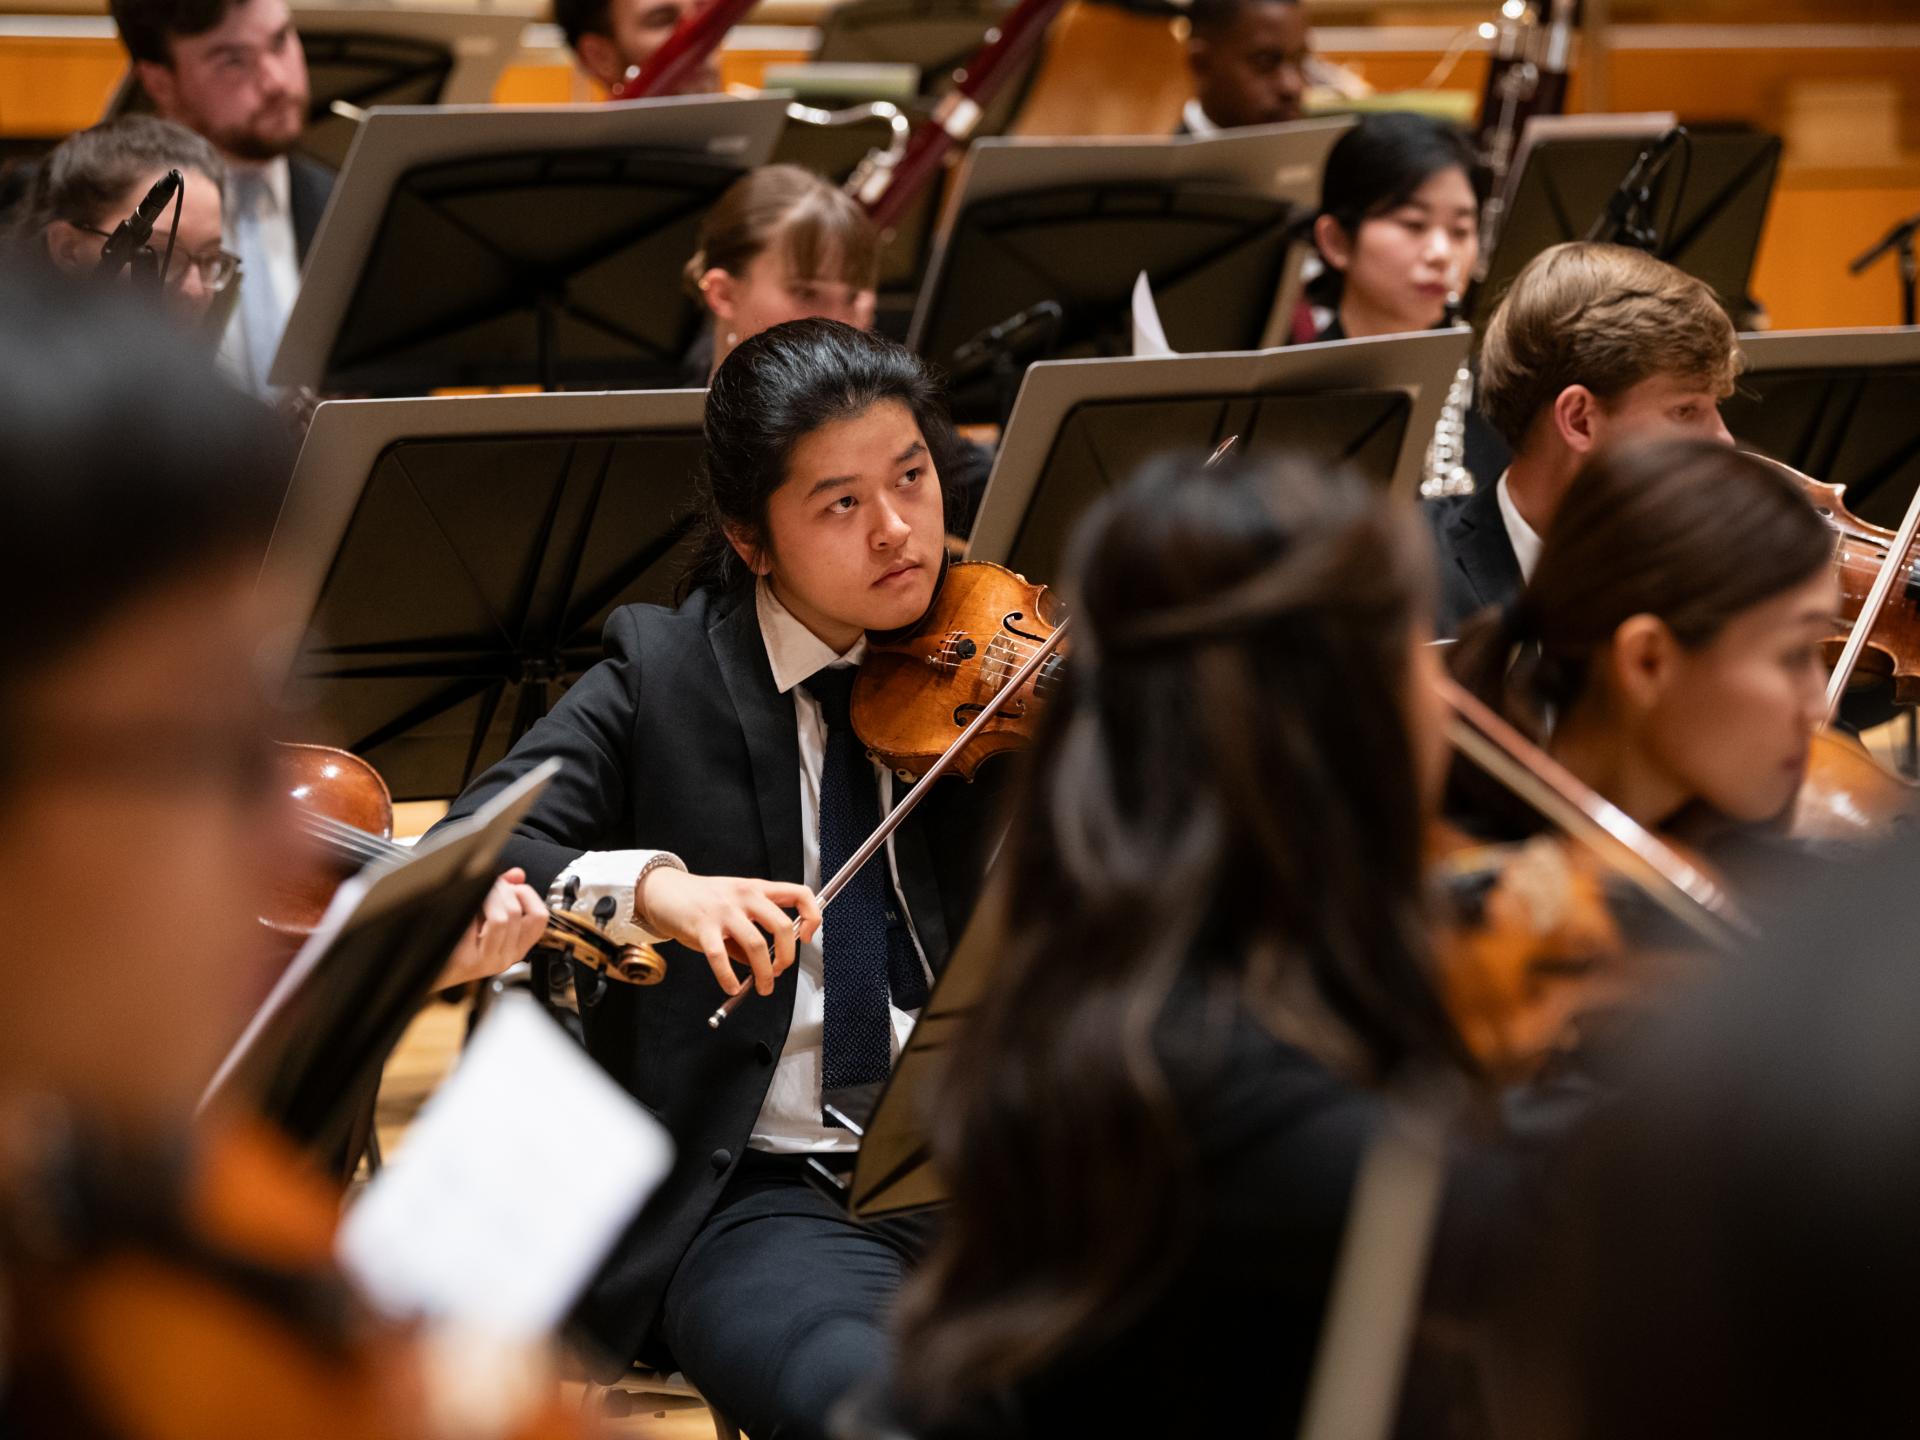 Ein Student inmitten des Orchesters spielt Geige und schaut zum Dirigenten